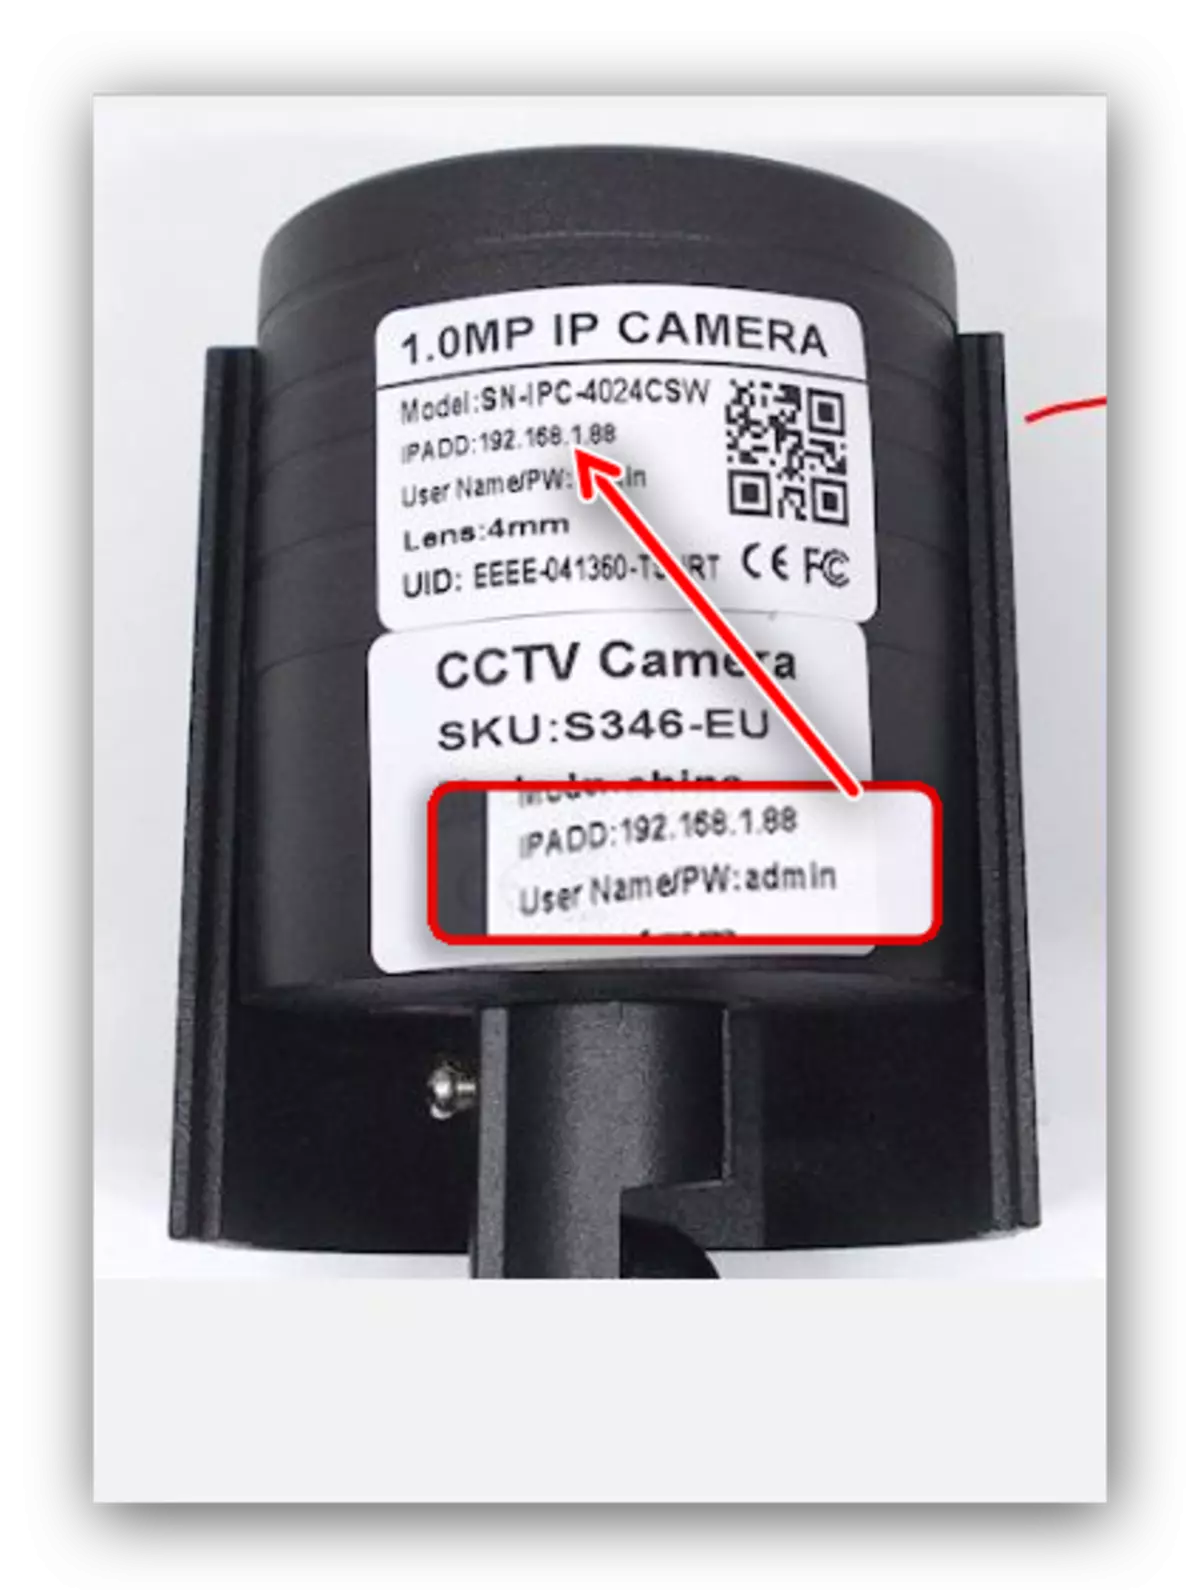 Sužinokite adresą, kad prijungtumėte IP kamerą per maršrutizatorių